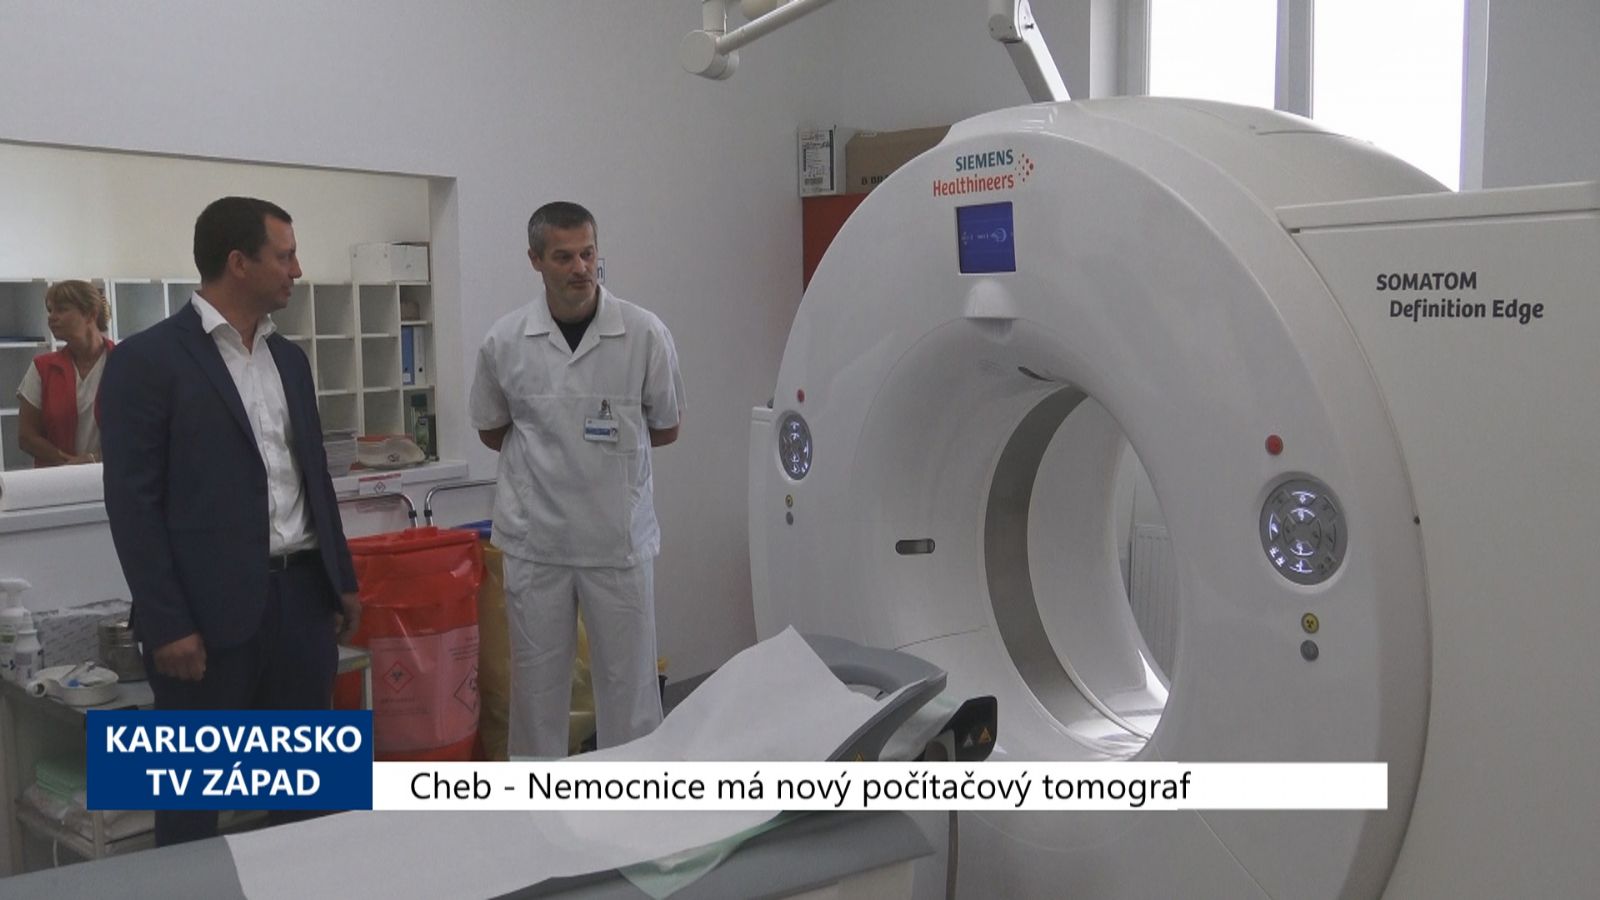 Cheb: Nemocnice má nový počítačový tomograf (TV Západ)